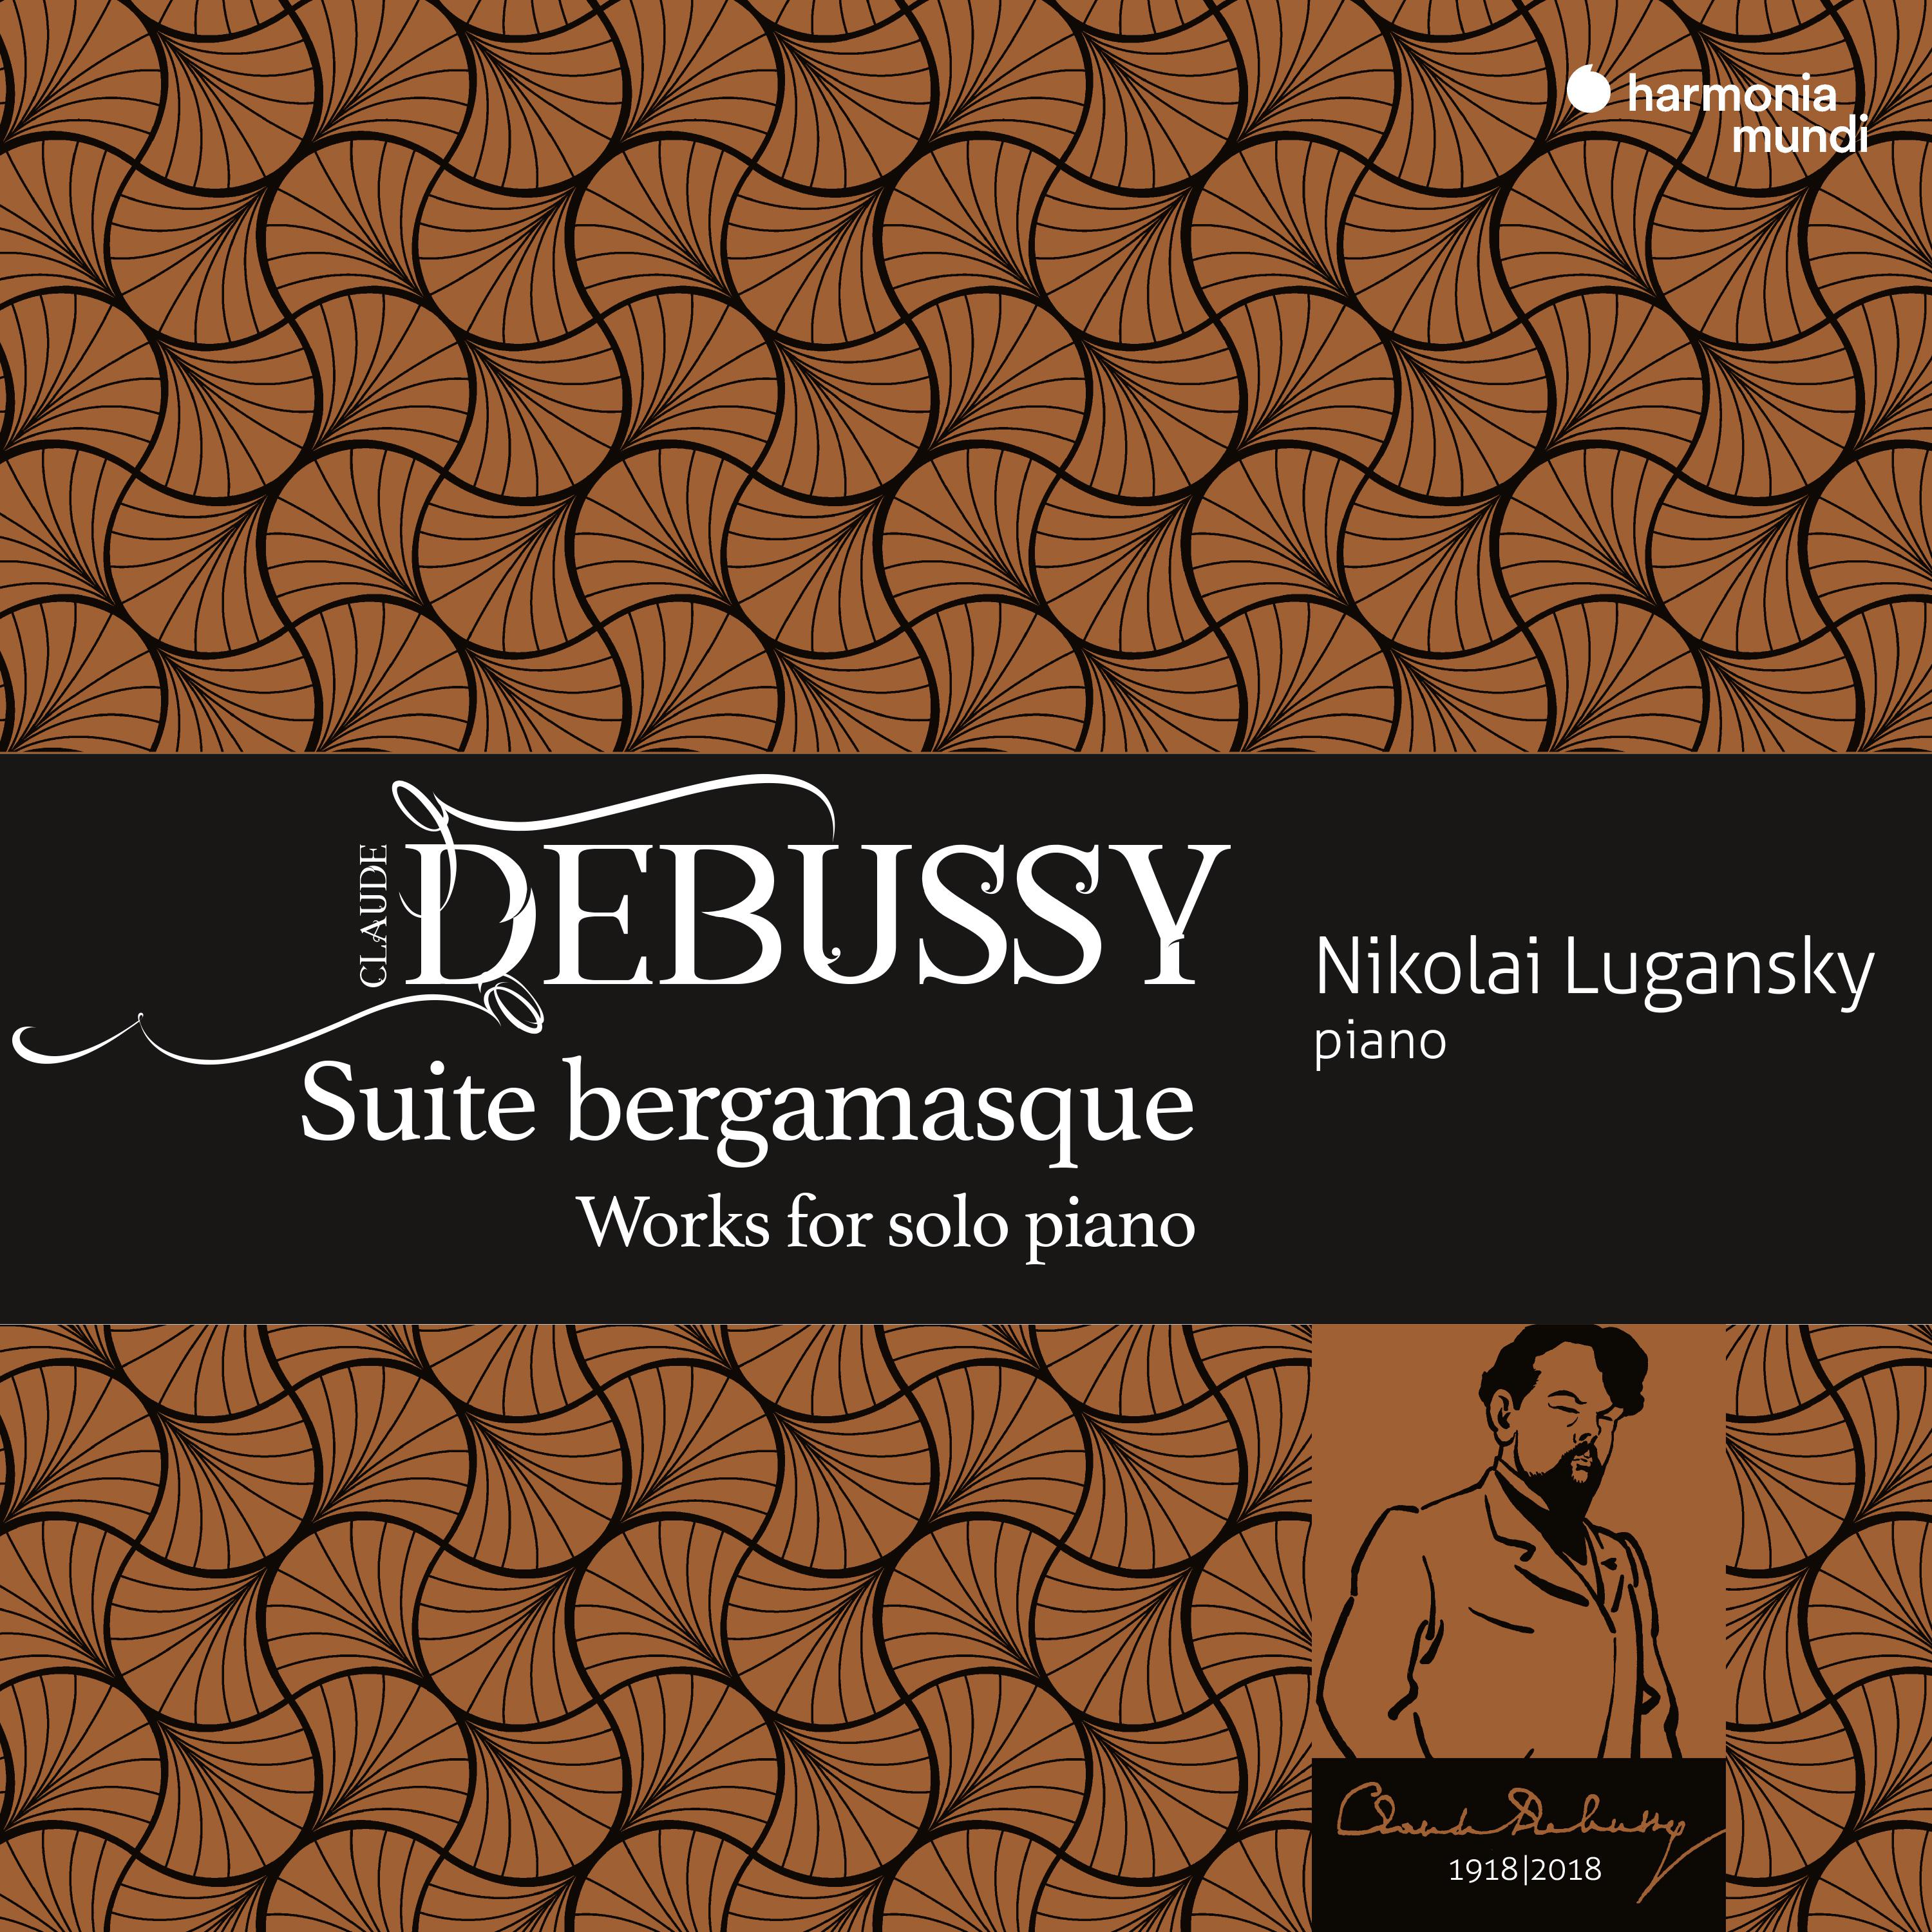 Suite bergamasque, CD. 82: I. Pre lude. Moderato tempo rubato